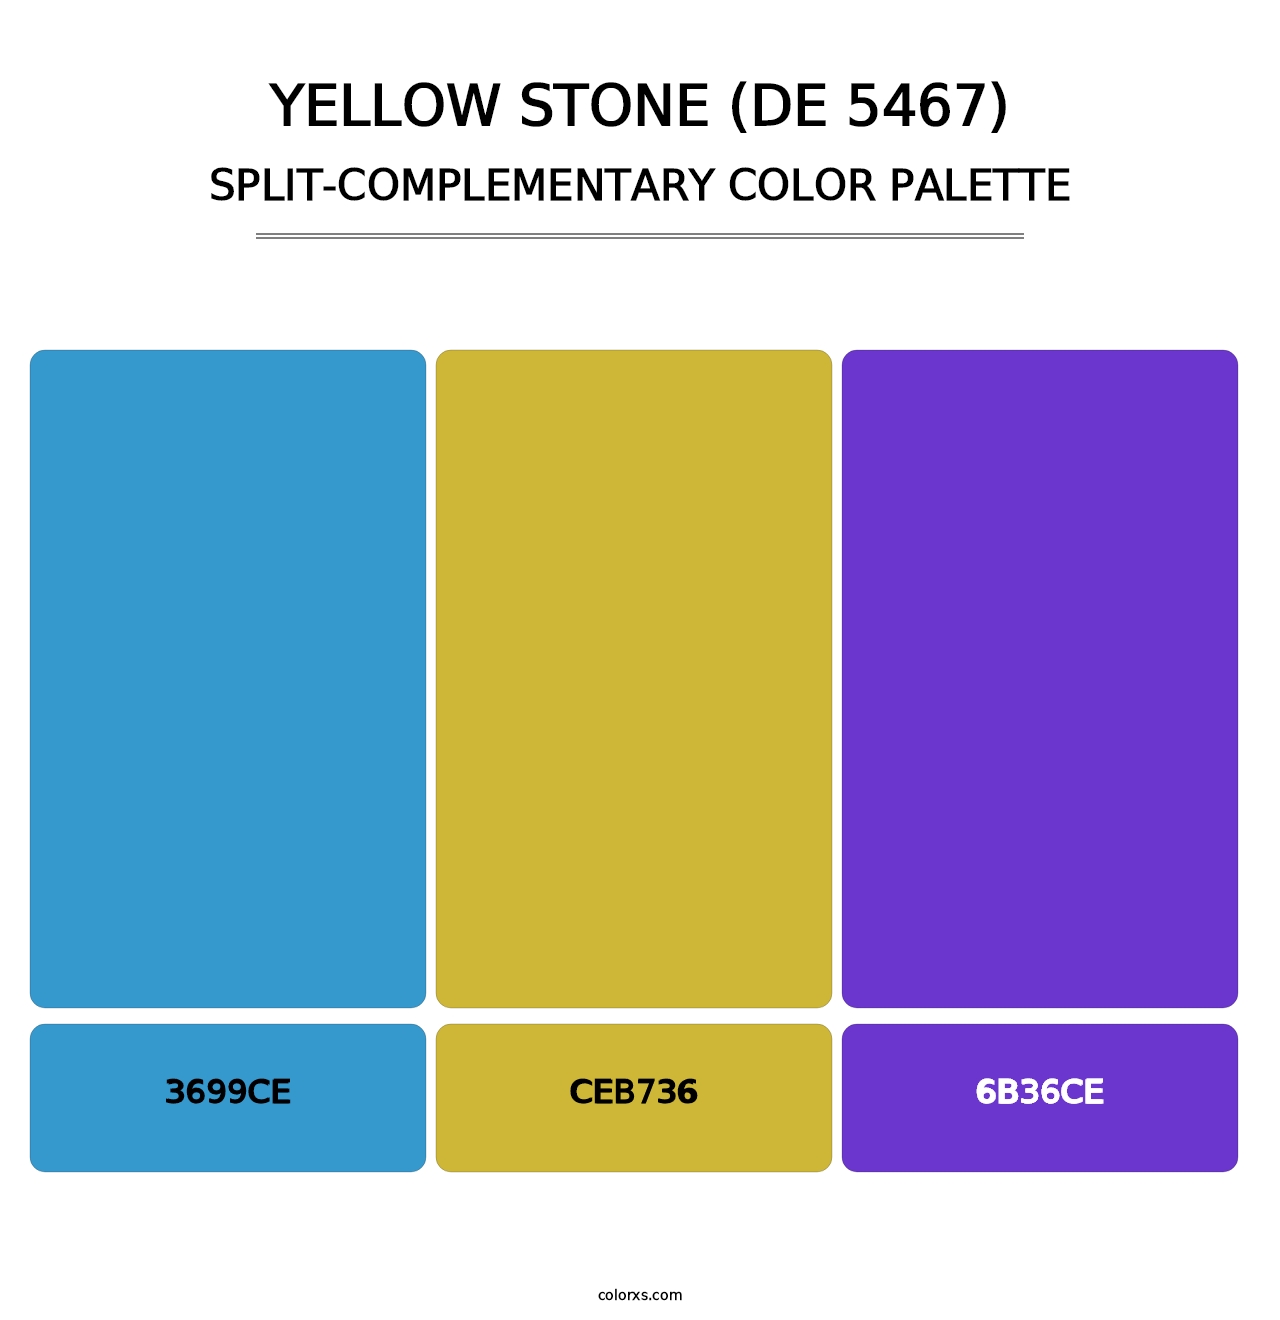 Yellow Stone (DE 5467) - Split-Complementary Color Palette